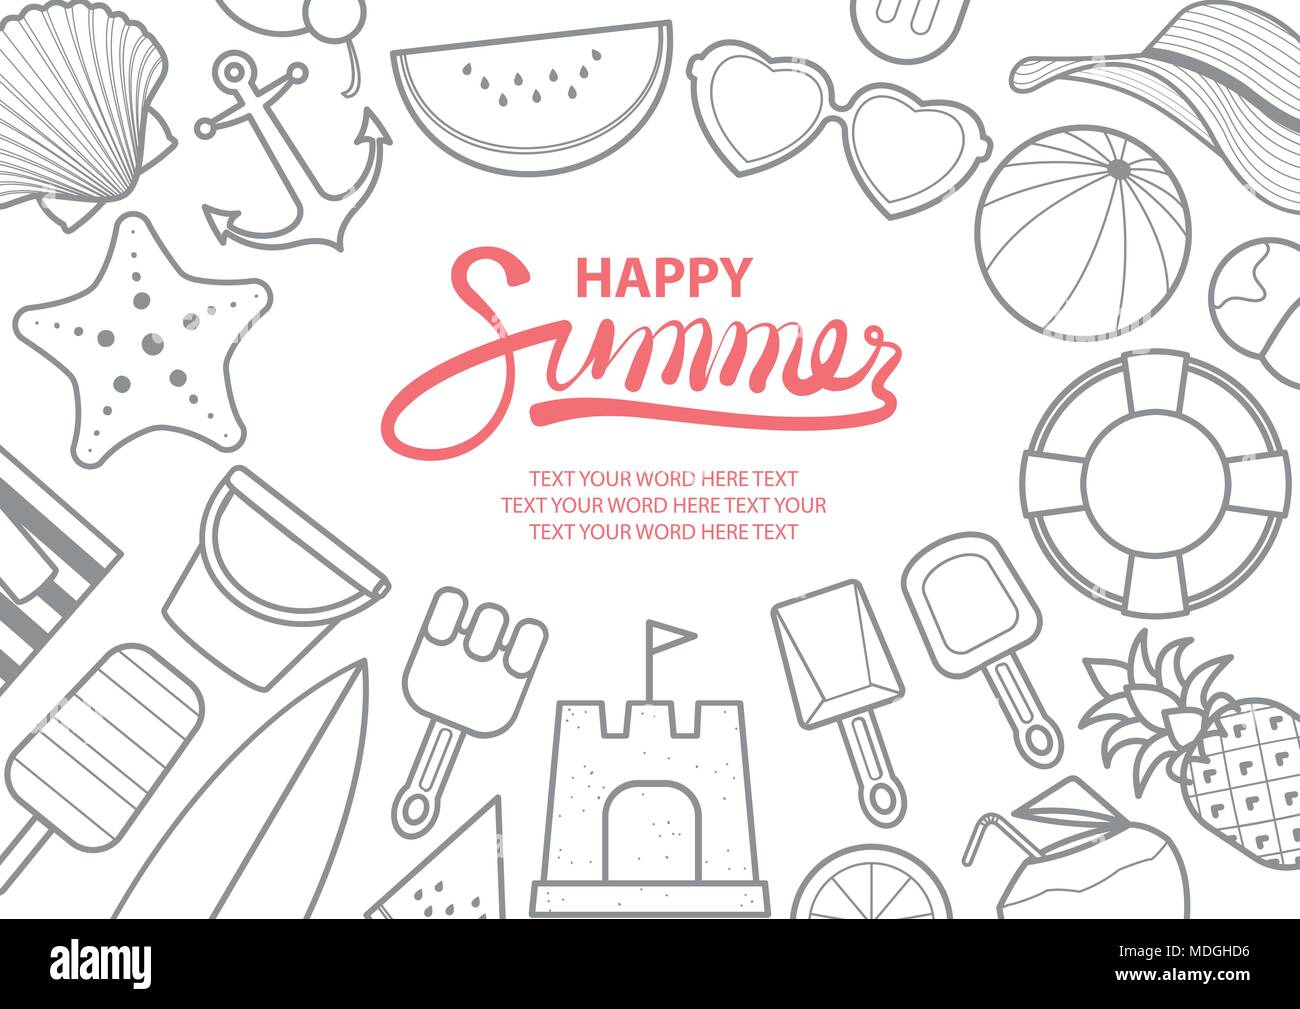 Background design illustrazione vettoriale per l'estate con spazio per il testo. Spiaggia roba in grigio surround outline testo rosa al centro dell'immagine. Illustrazione Vettoriale